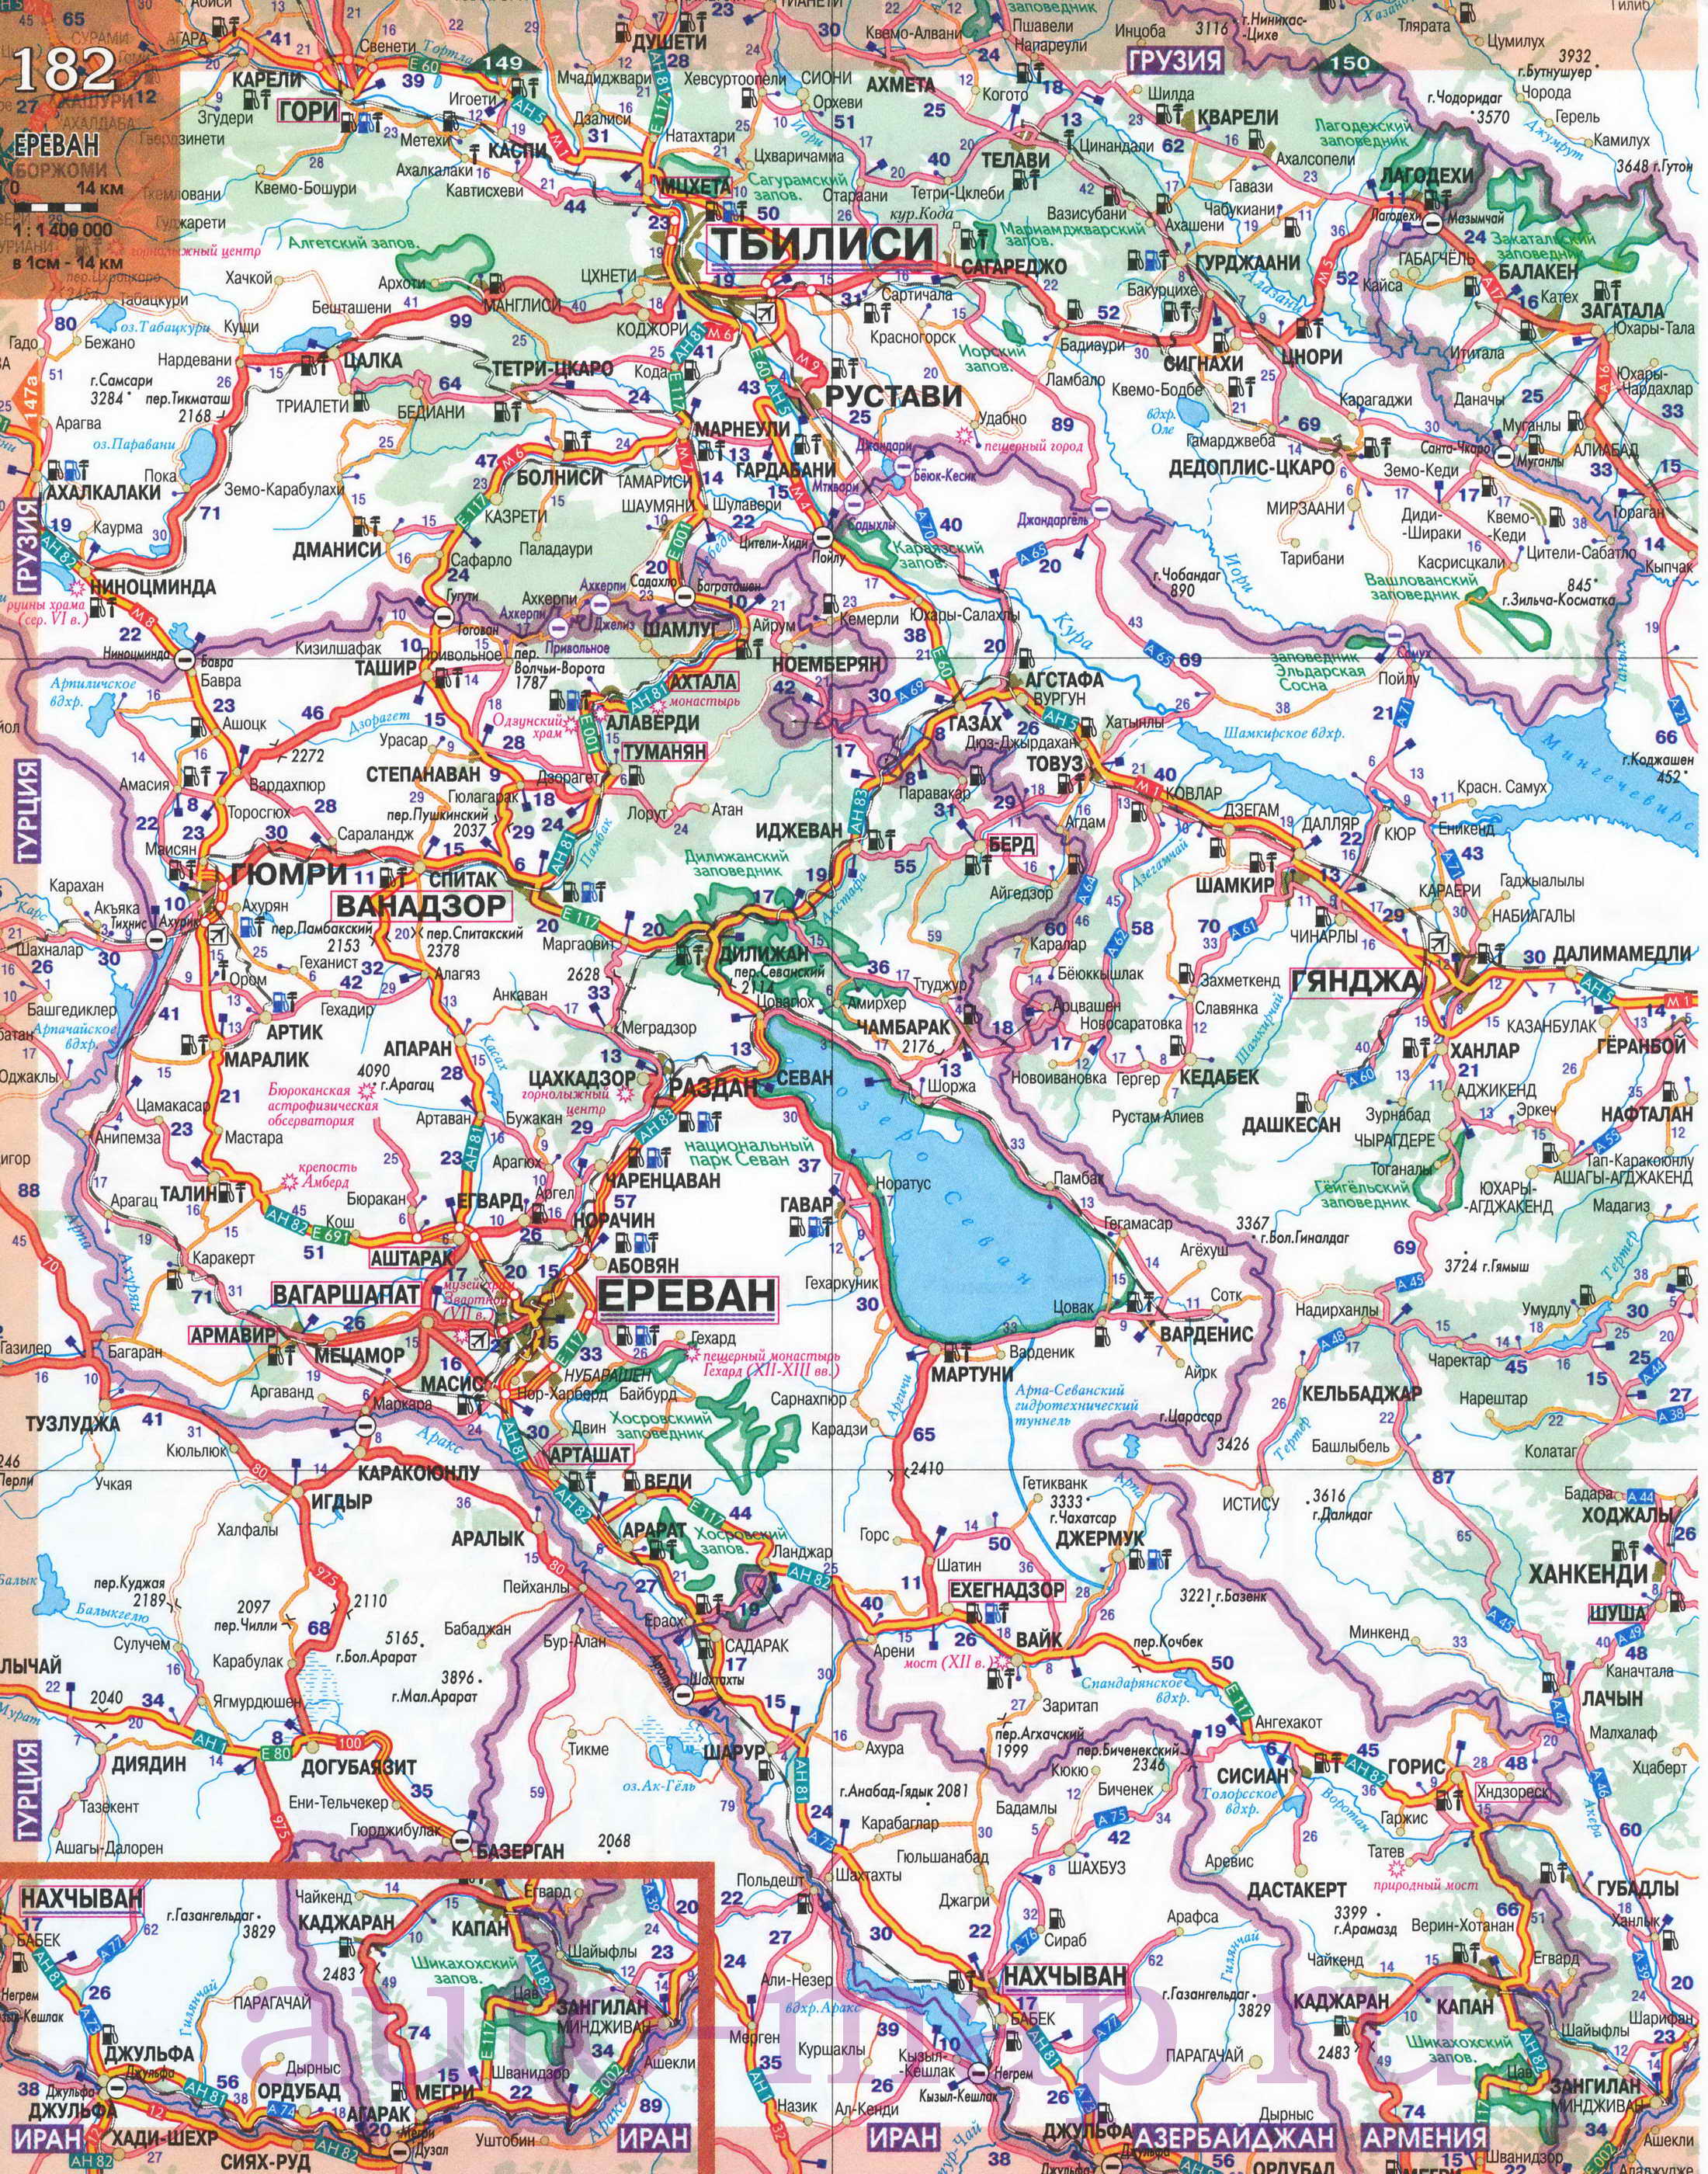 Карта Азербайджана и Армении. Подробная автомобильная карта Азербайджана и Армении, A0 - 